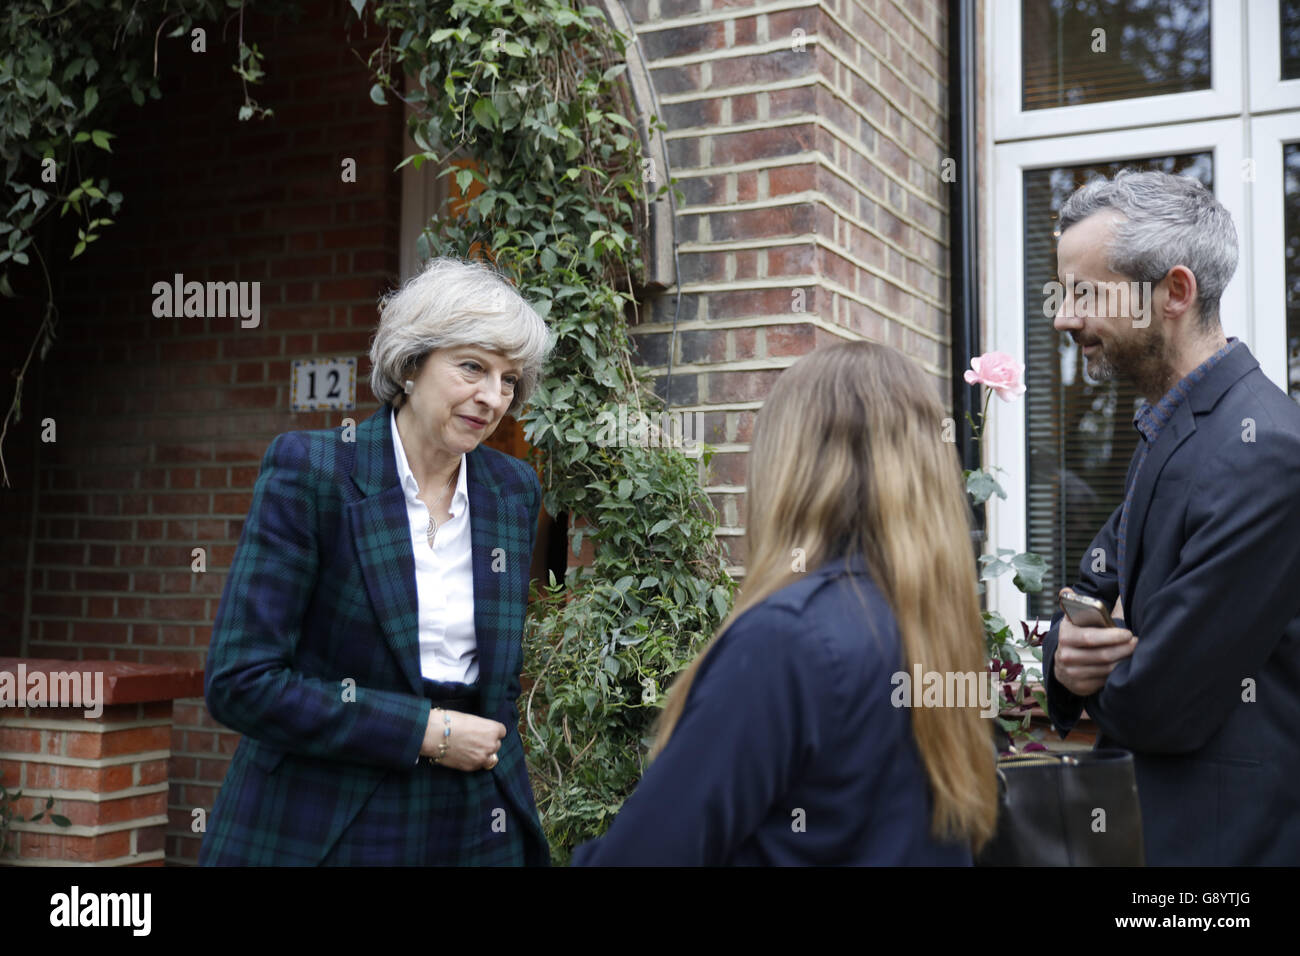 Londres, Reino Unido, 30 de junio de 2016. Teresa puede llega a casa de Hampstead y Kilburn constituyentes para dar una breve charla de crédito: Fantástico conejo/Alamy Live News Foto de stock